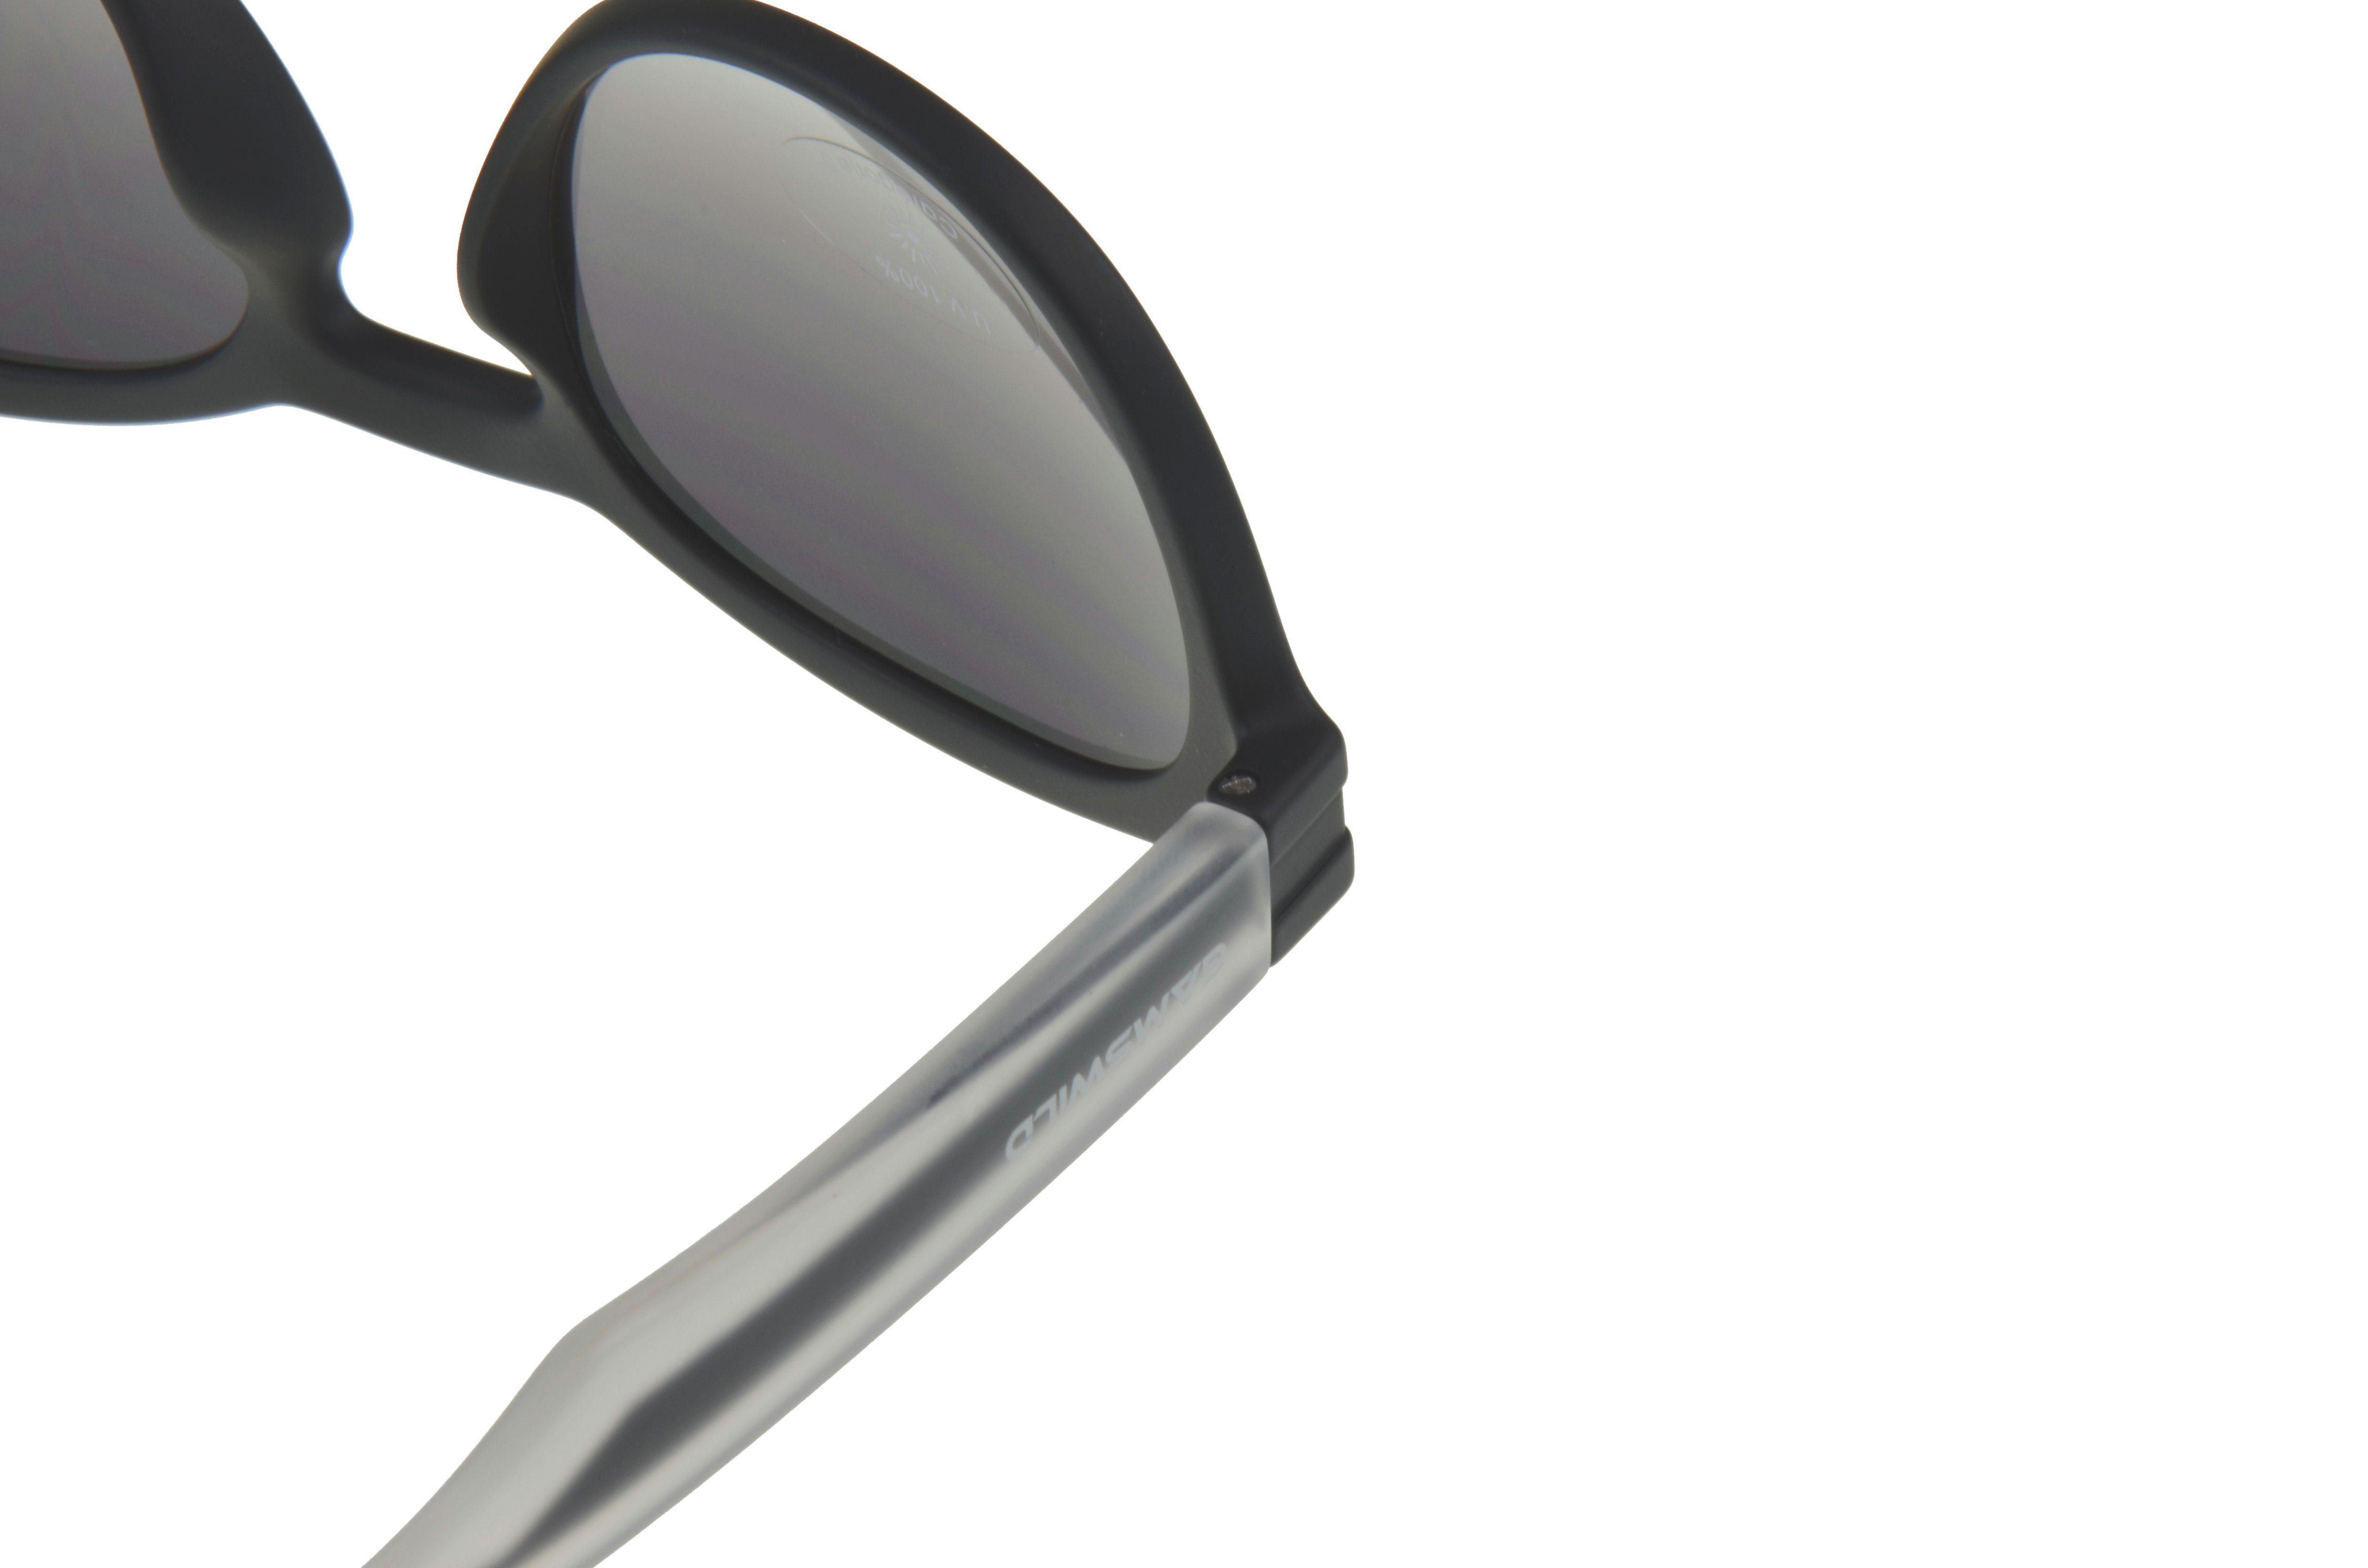 Bügel halbtransparenter Unisex Herren Sonnenbrille schwarz GAMSSTYLE Gamswild WM7525 Damen Modebrille